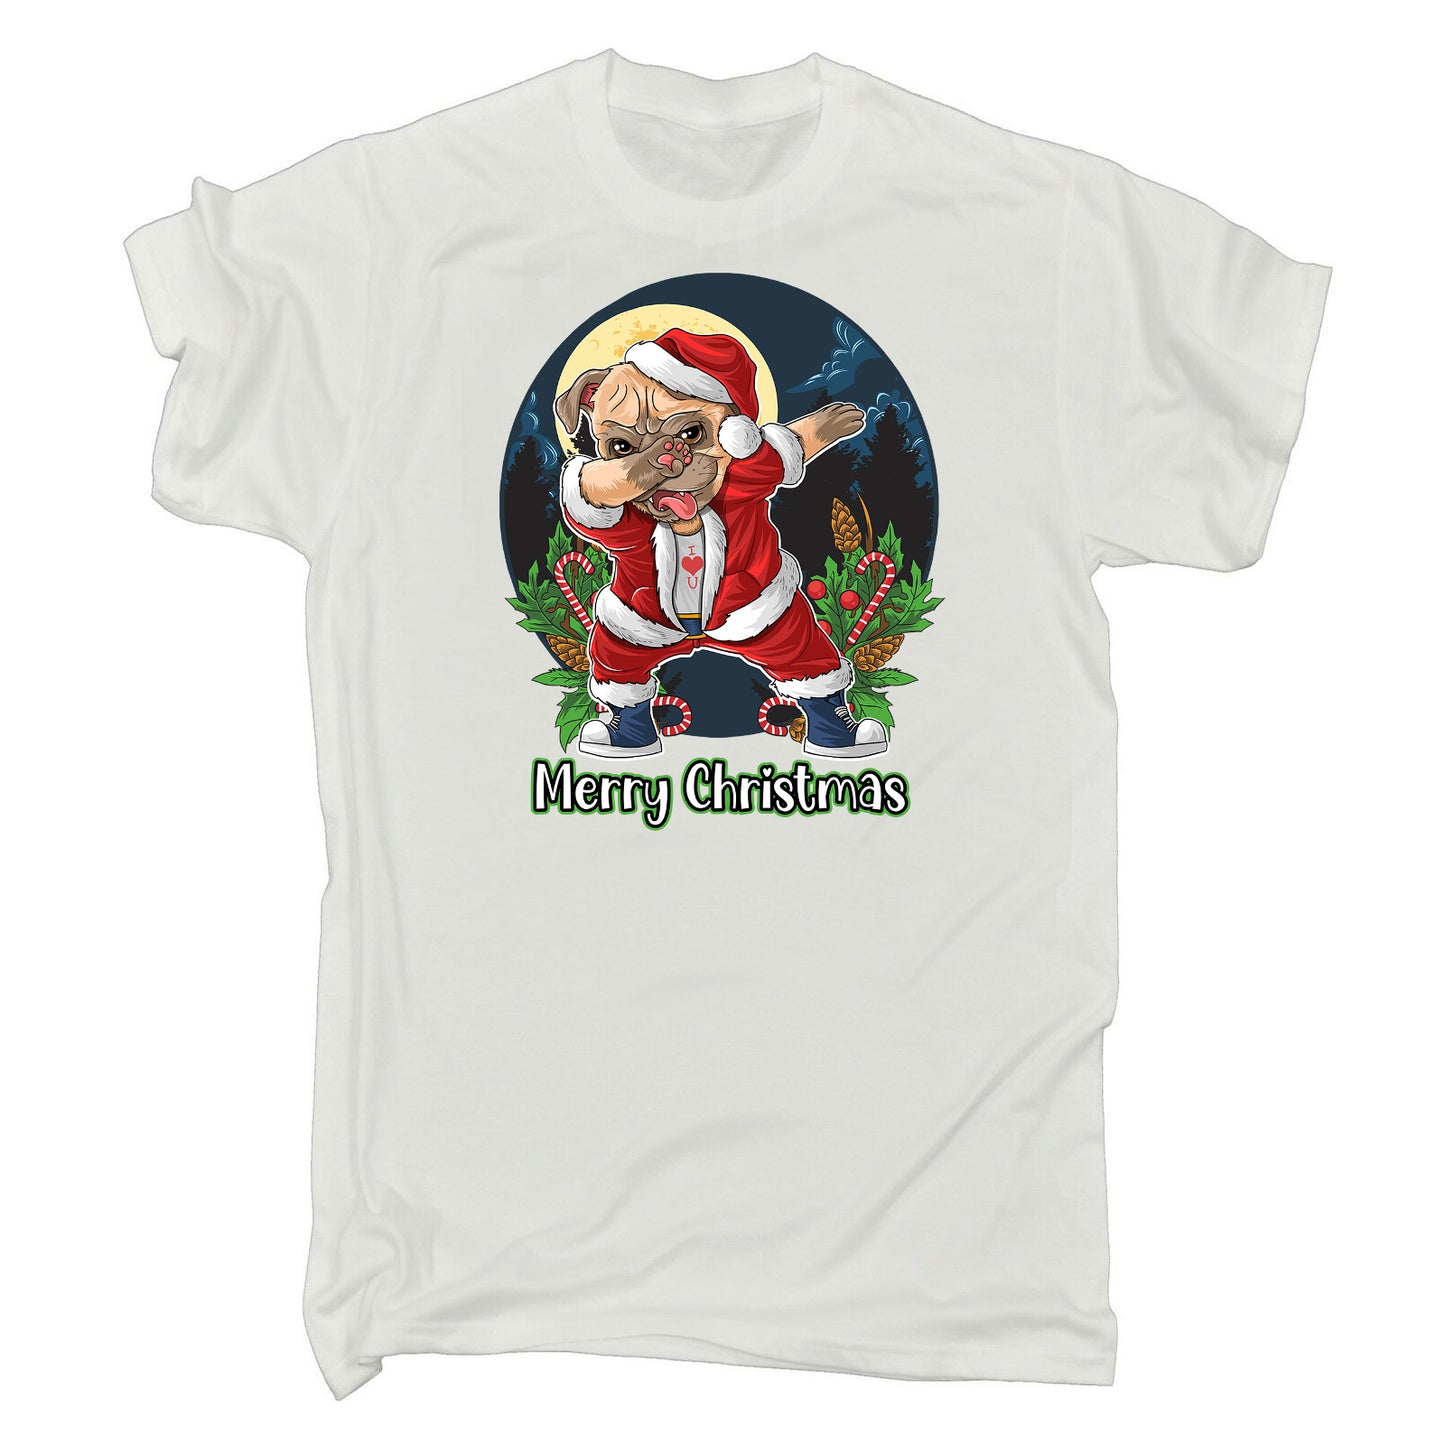 Merry Christmas Xmas Pug Dog Dabbing - Mens Funny T-Shirt Tshirts